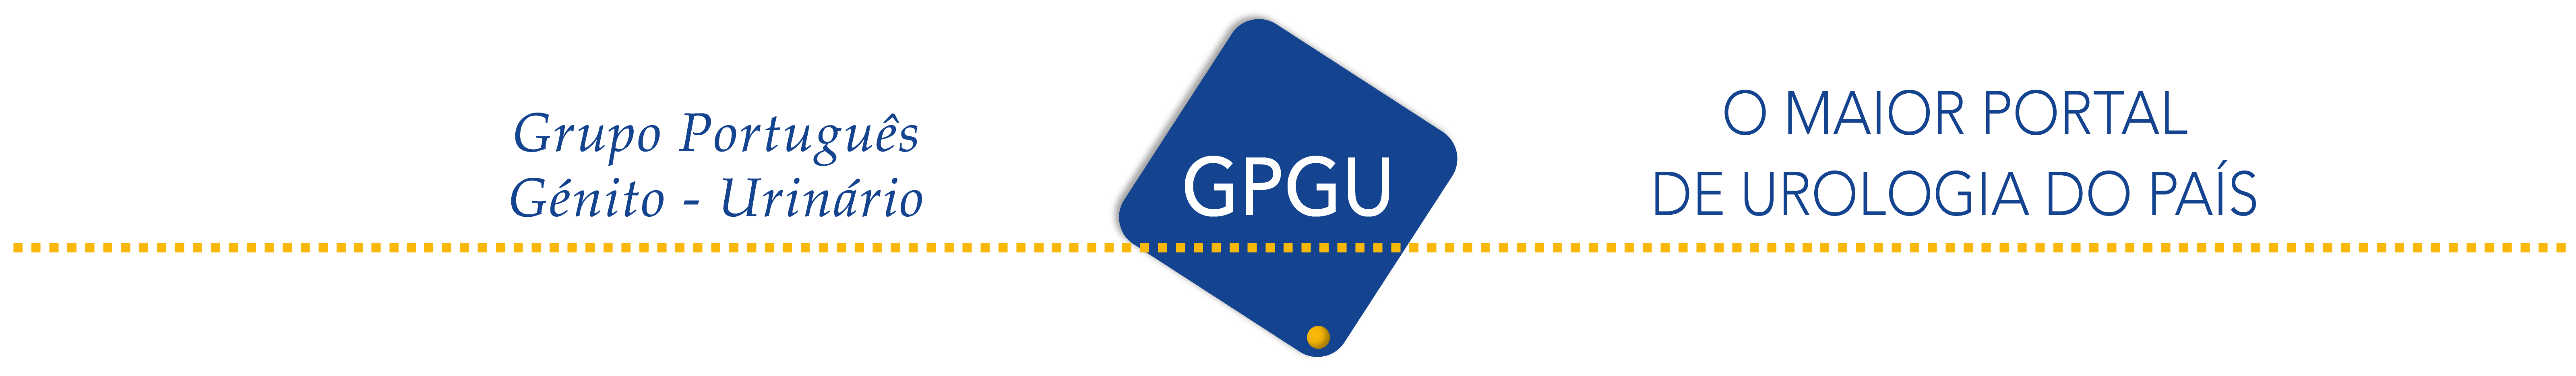 GPGU - O maior portal de urologia do país